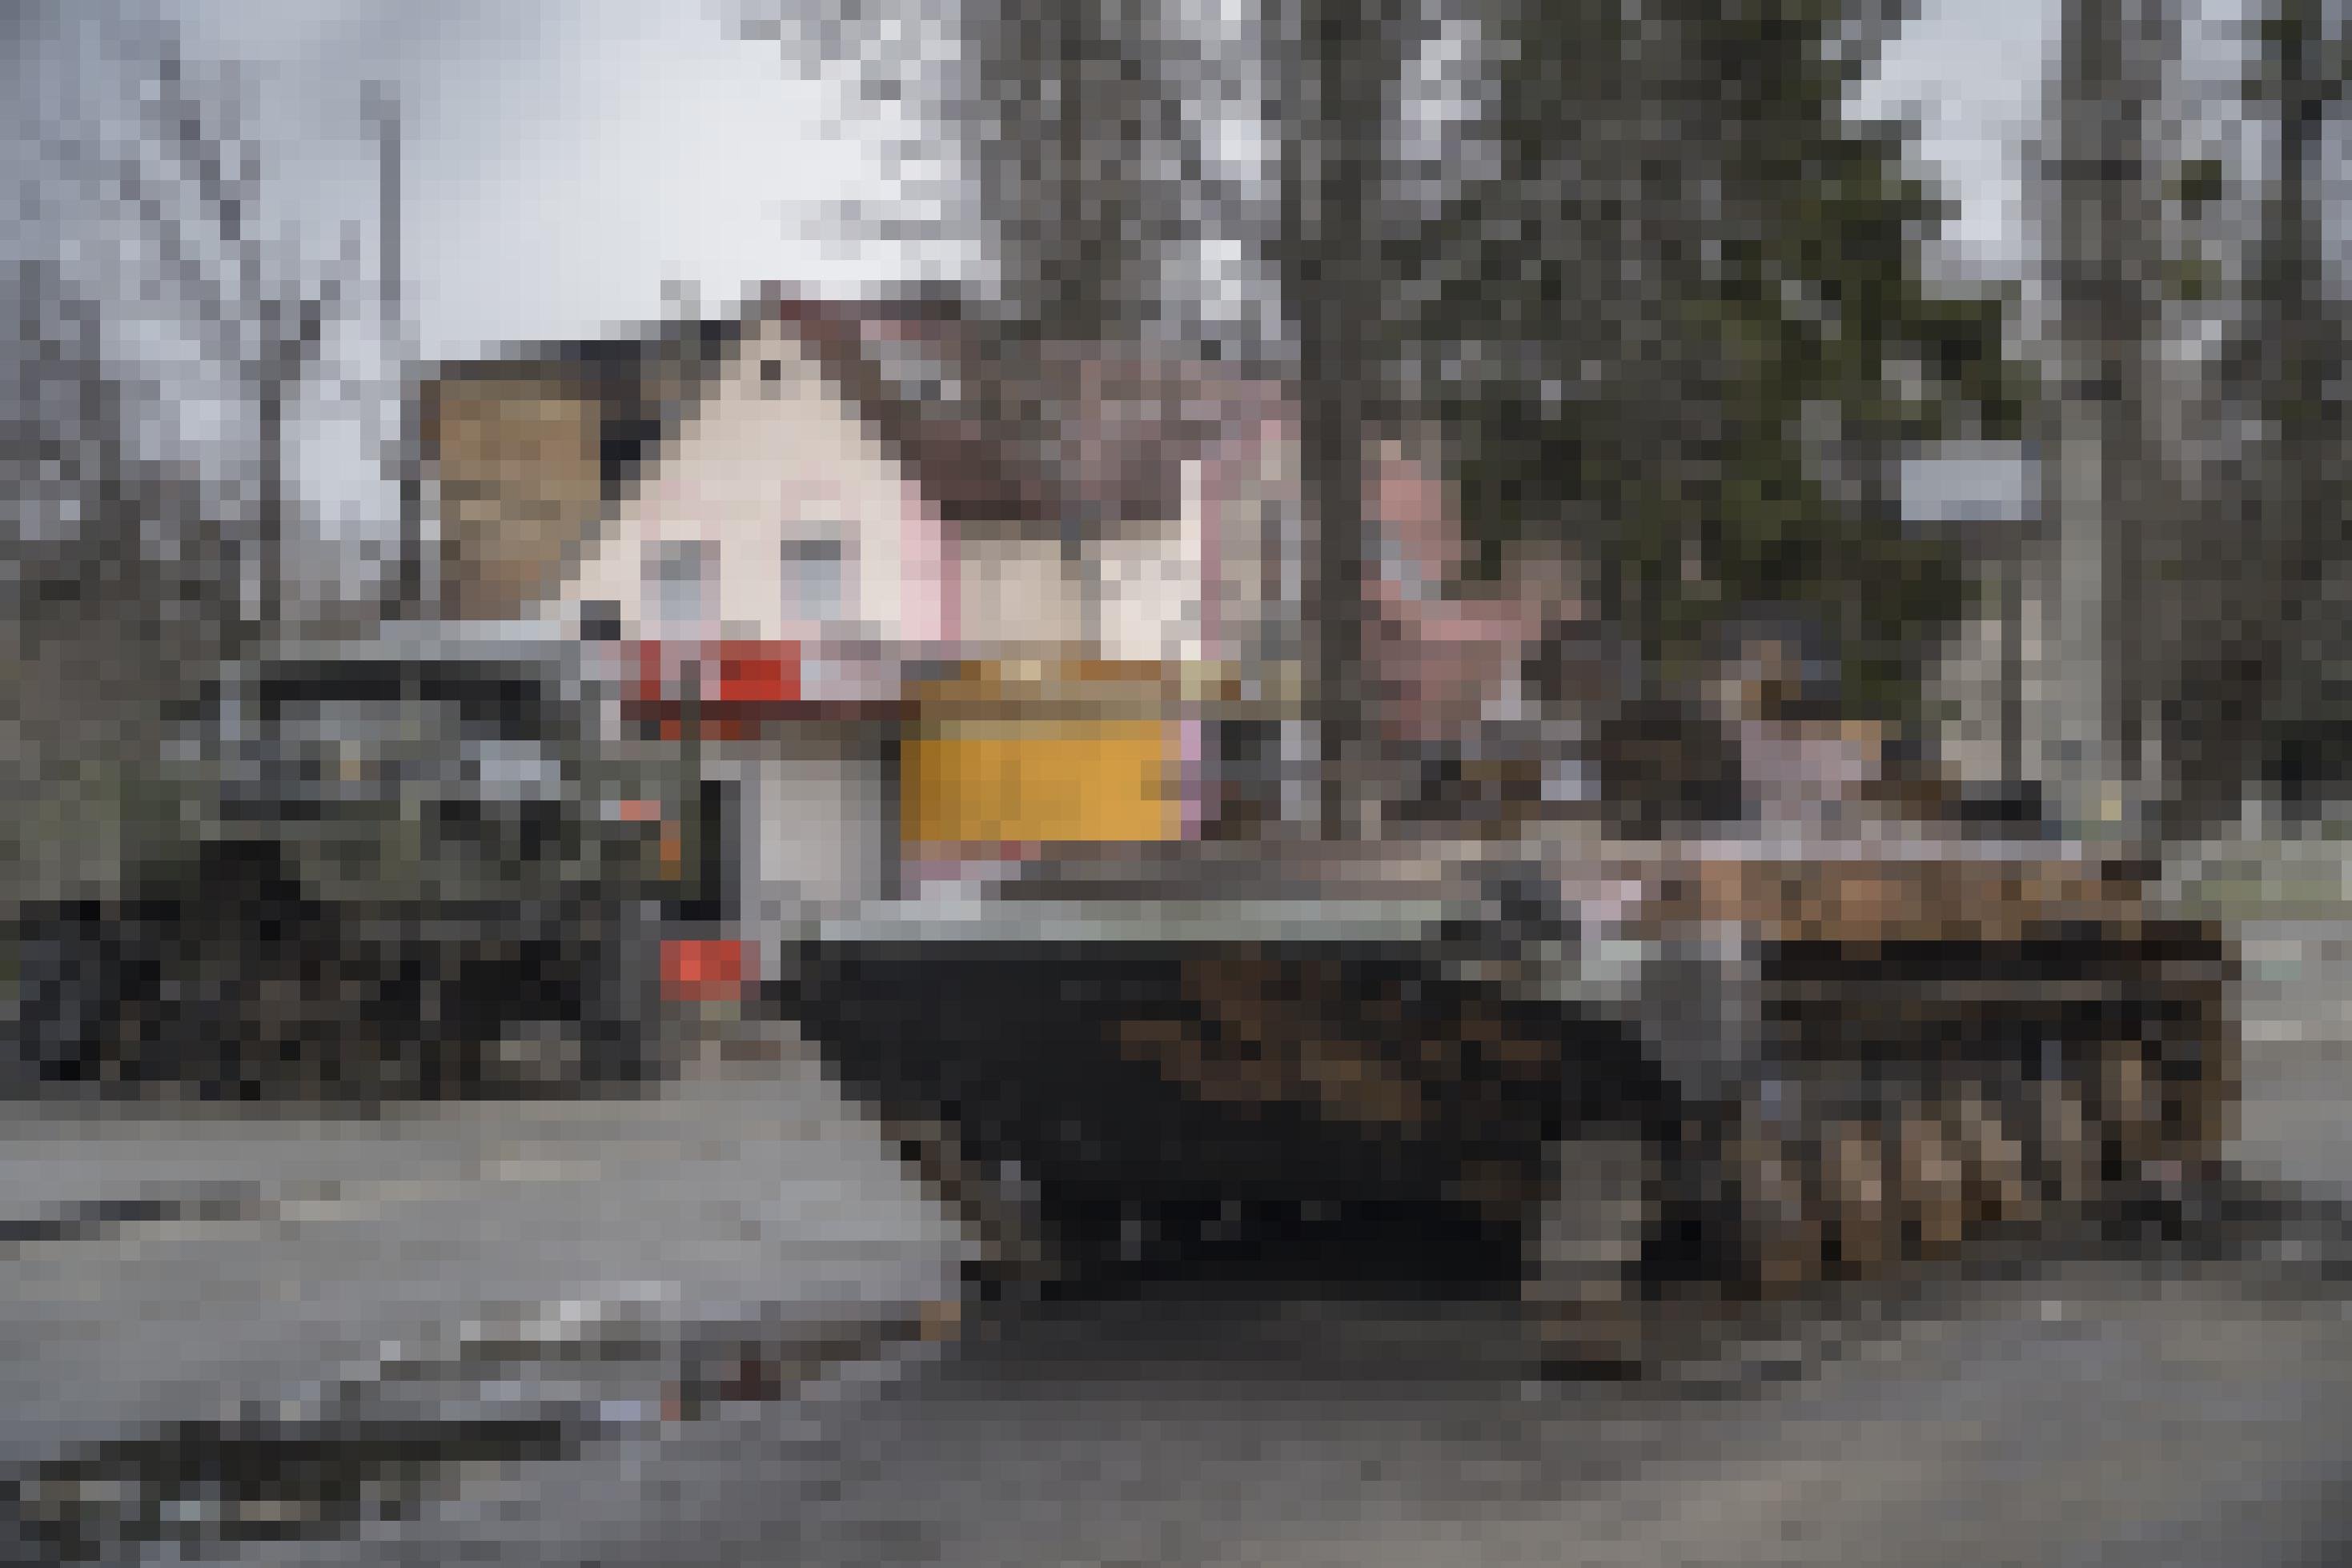 Borodjanka, Region Kiew im April 2022. Ein ausgebrannter russischer Schützenpanzer nach der Befreiung der Region von russischen Truppen.